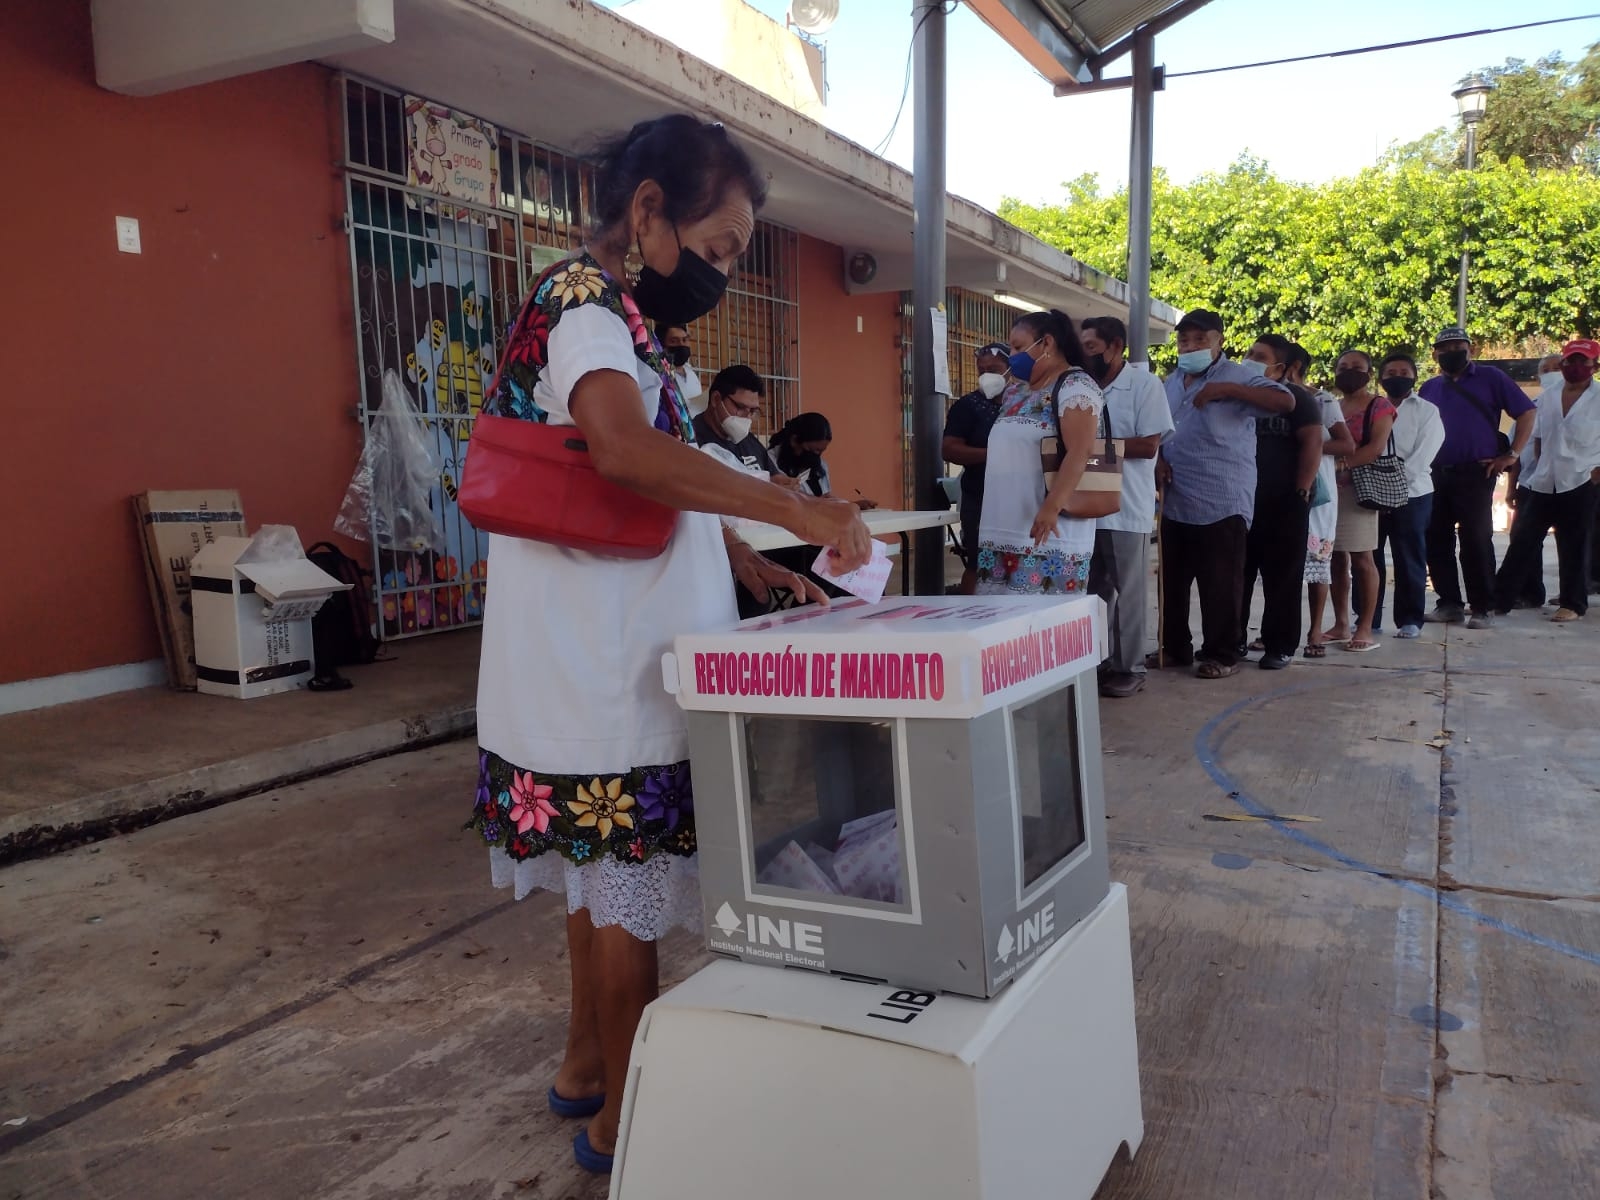 Municipios de Quintana Roo participan en la Revocación de Mandato: Aquí la jornada